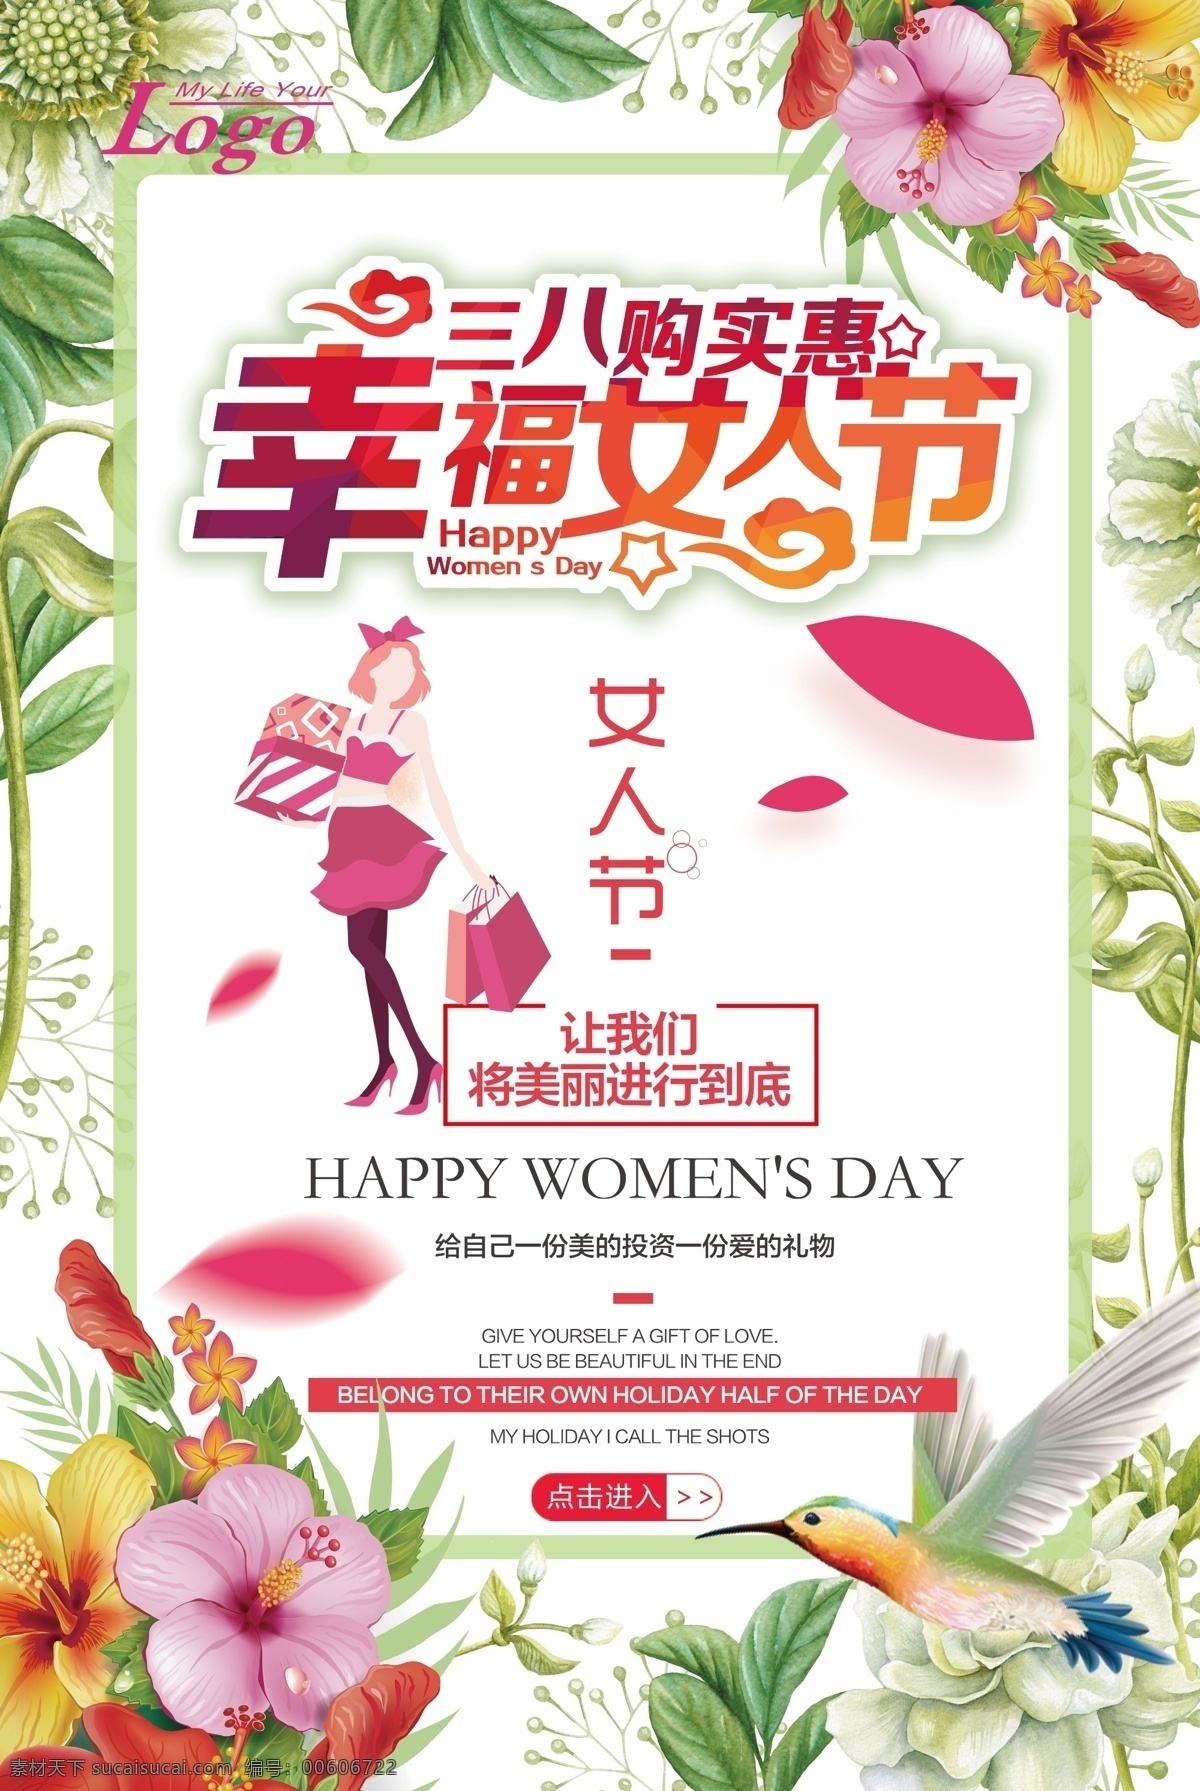 幸福 三八妇女节 妇女节活动 妇女节快乐 海报 快乐妇女节 浪漫妇女节 女神节 约惠妇女节